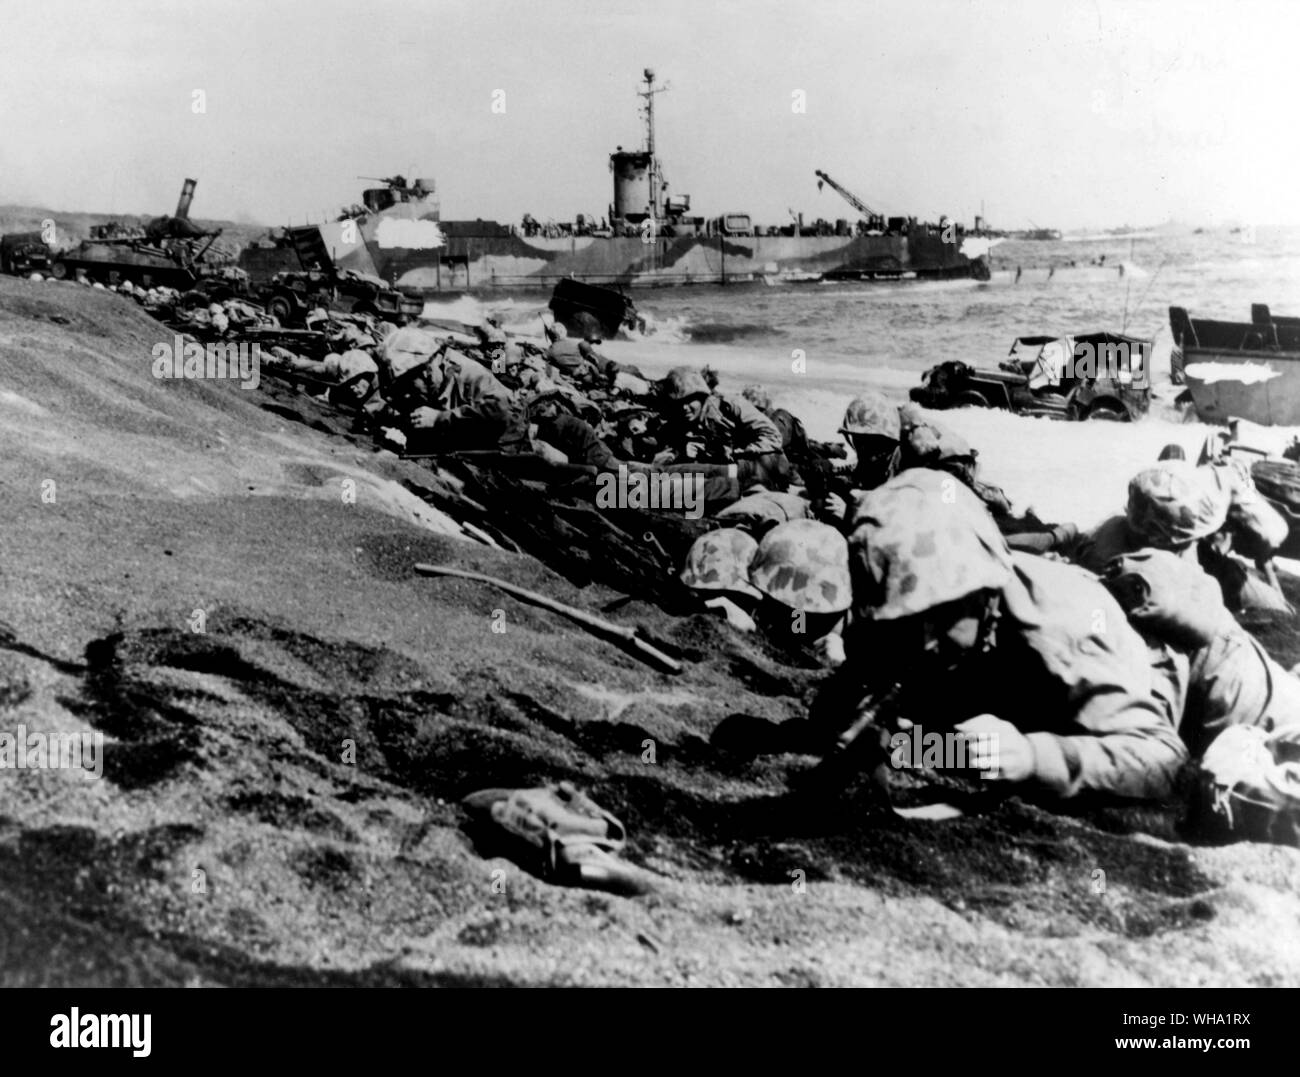 WW2: Vierte Marine Division bewegen bis der Strand von Iwo Jima am D-Day, 19. Feb 1945. Ihre vierte Amphibisches in 12 Monaten, der Veteran Kämpfer sind bereit, die rechte Flanke der ursprünglichen Beach Head zu sichern. Ein LSM ist im Hintergrund. Stockfoto